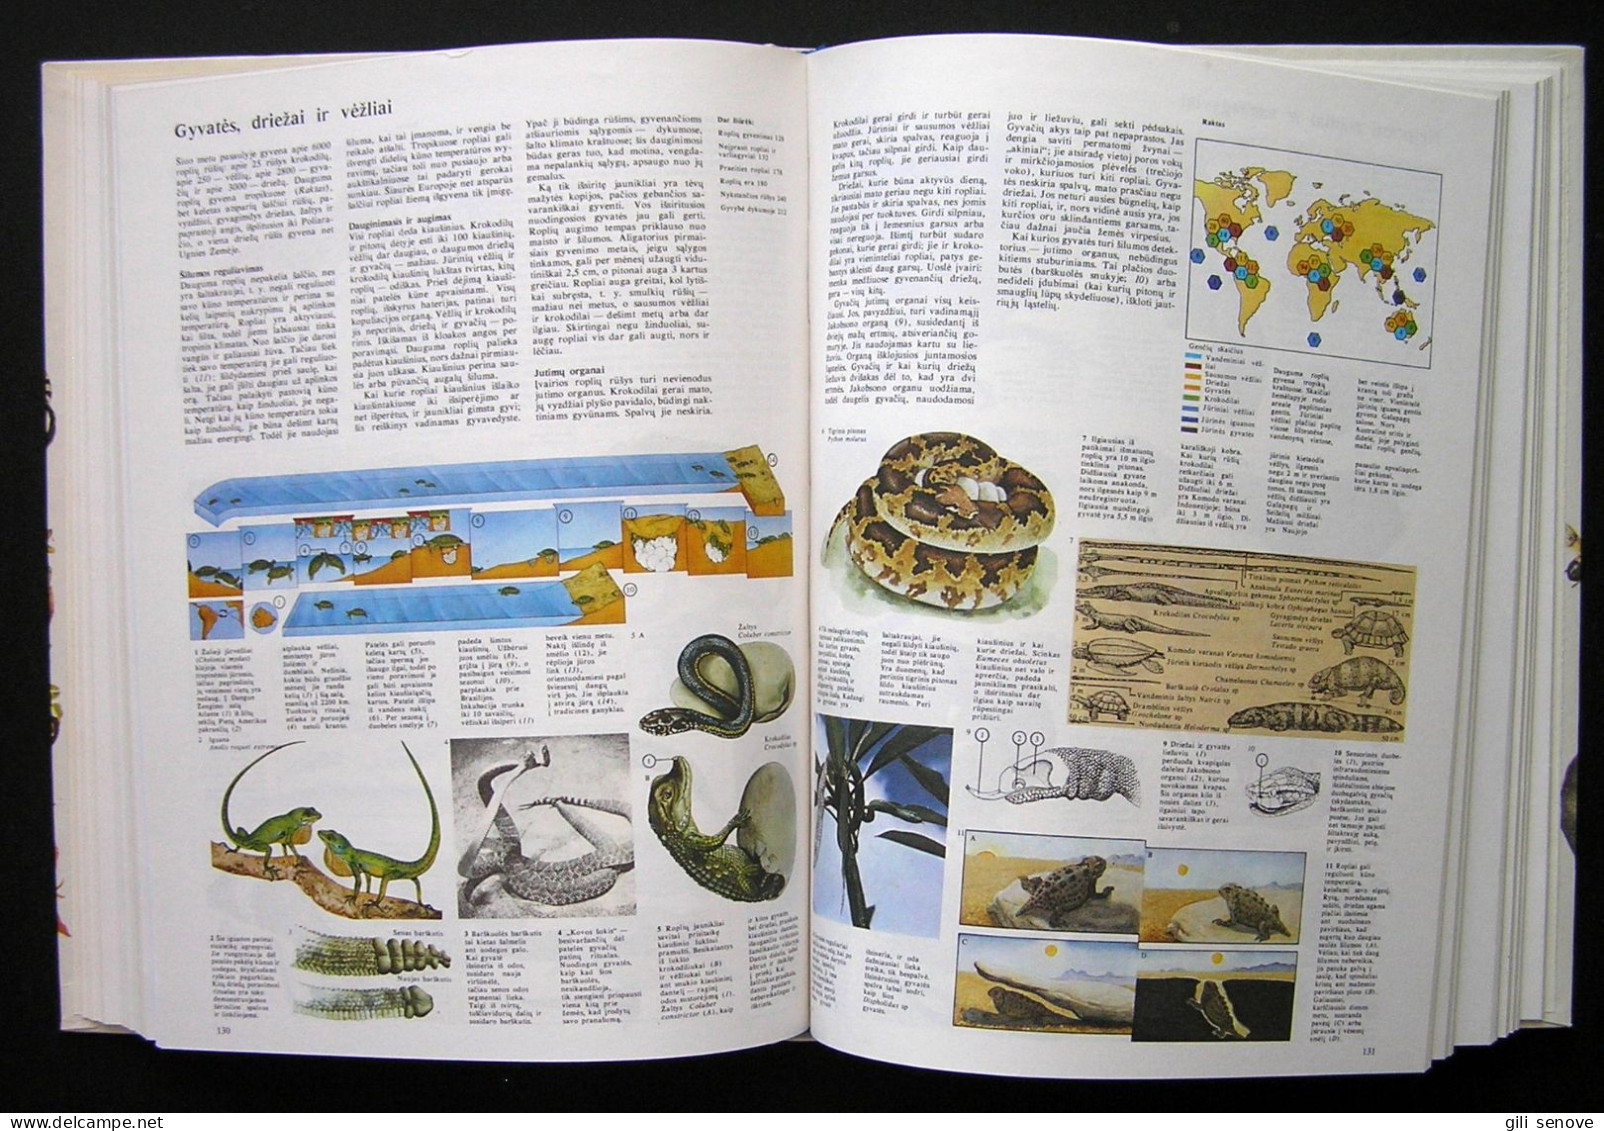 Lithuanian Book / Gyvoji Gamta 1990 - Culture